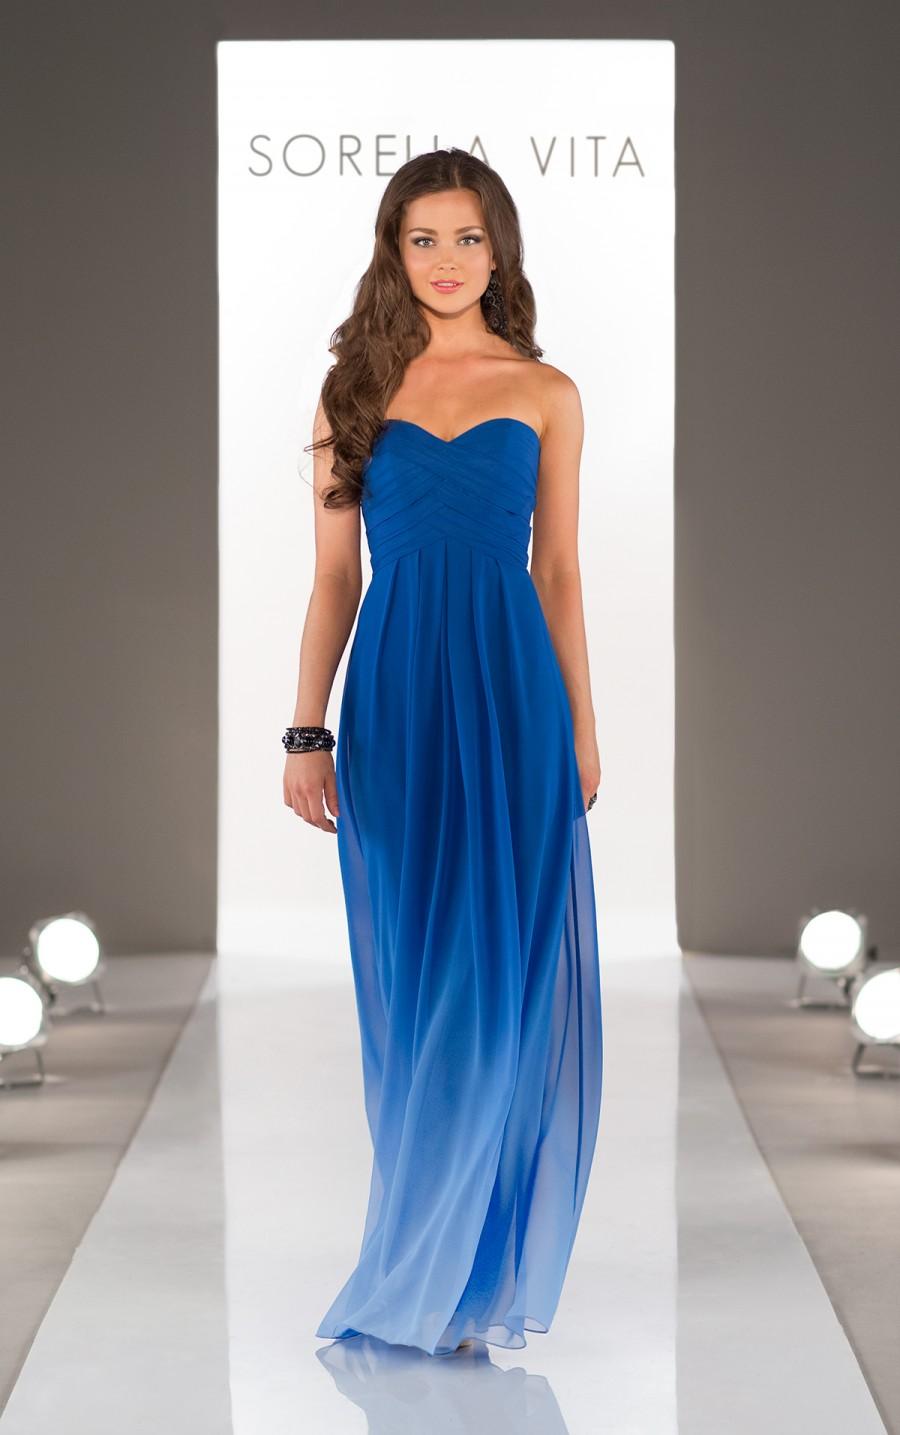 Hochzeit - Sorella Vita Blue Ombre Bridesmaid Dress Style 8405OM